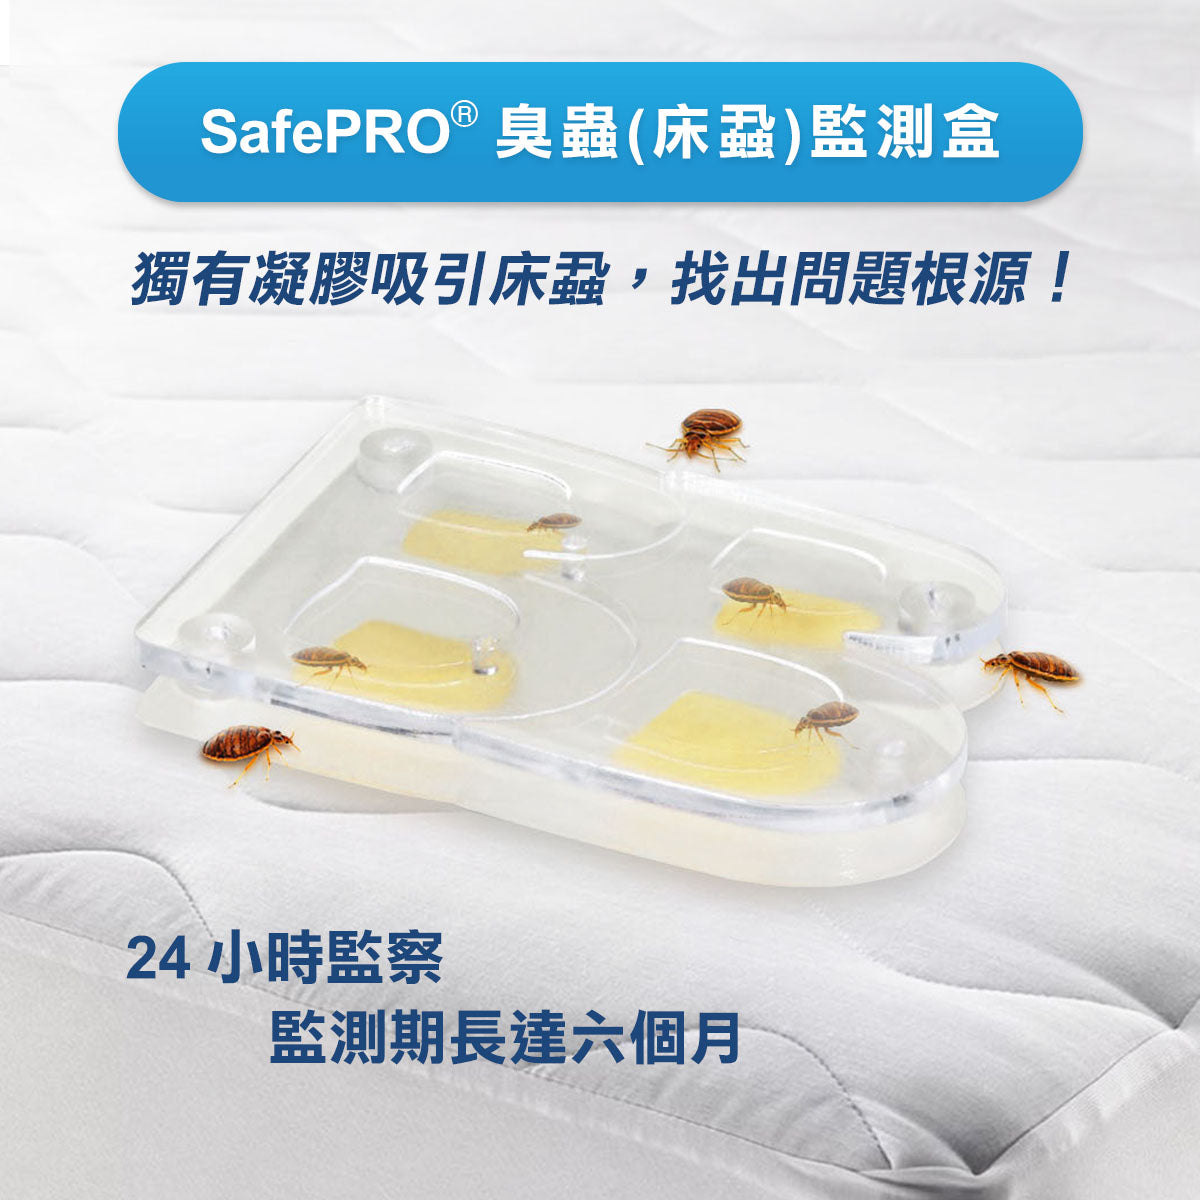 SafePRO® Bed Bug Alert Monitor